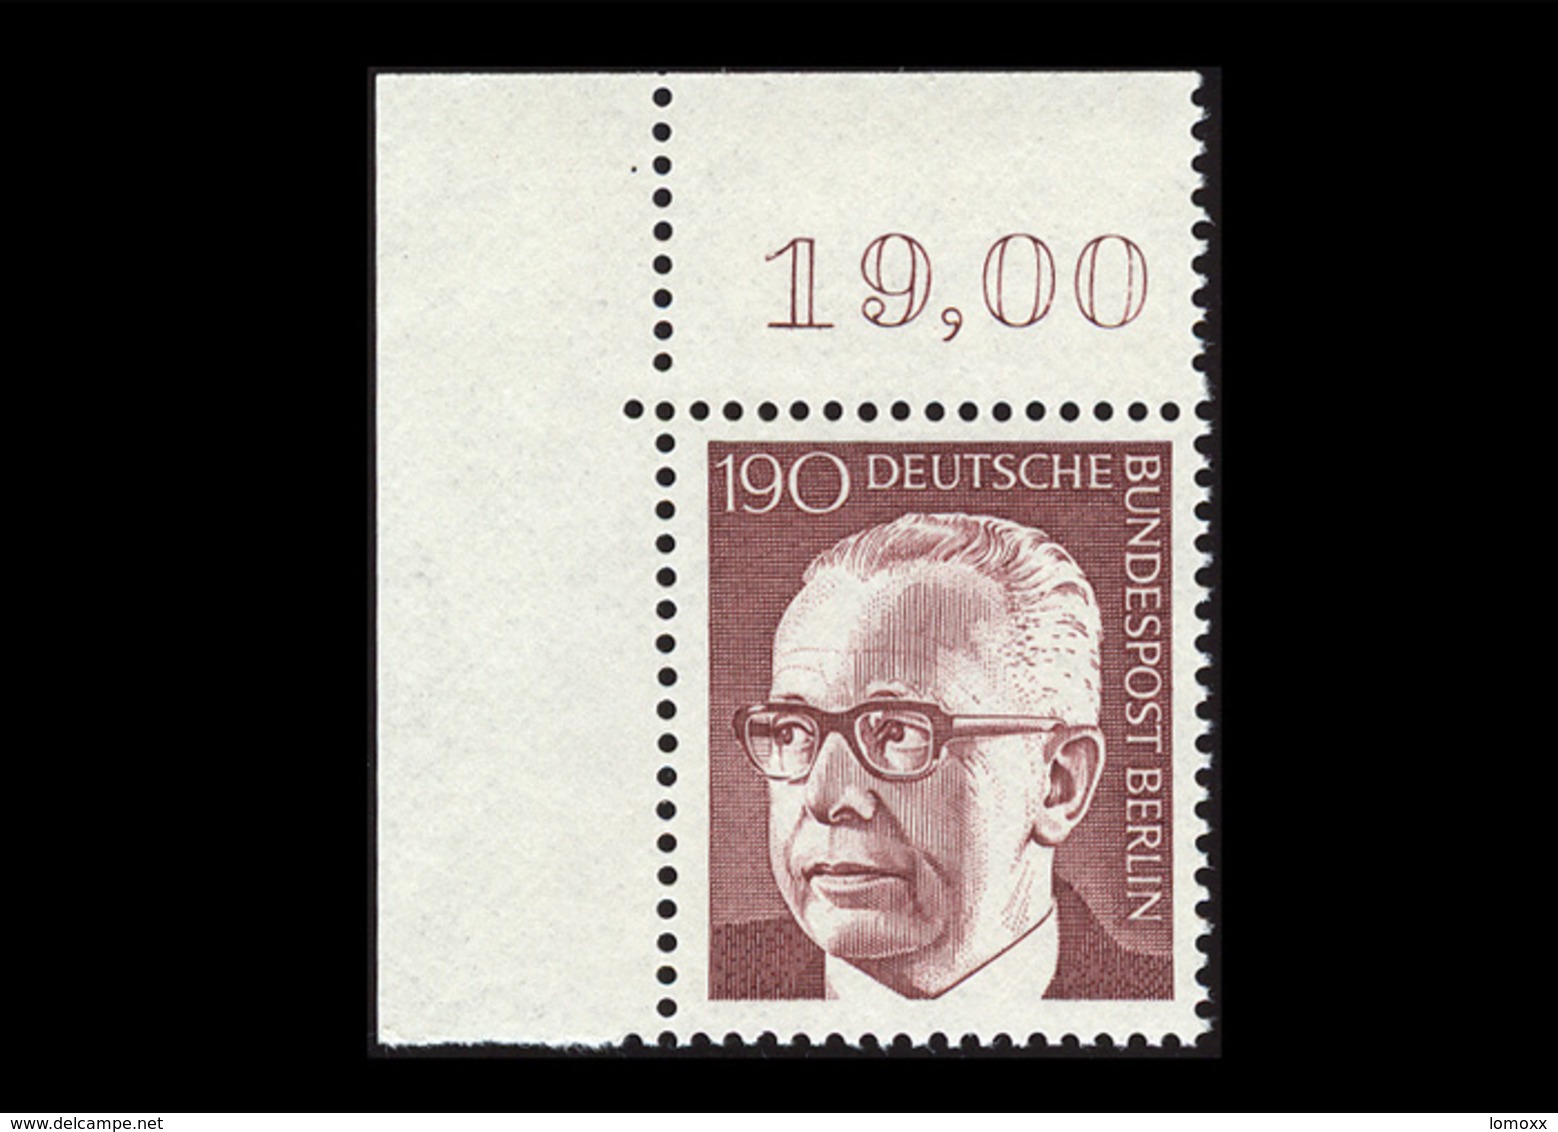 Berlin 1972, Michel-Nr. 433, Freimarken Bundespräsident Dr. Gustav Heinemann, 190 Pf., Eckrand Oben Links, Postfrisch - Ungebraucht